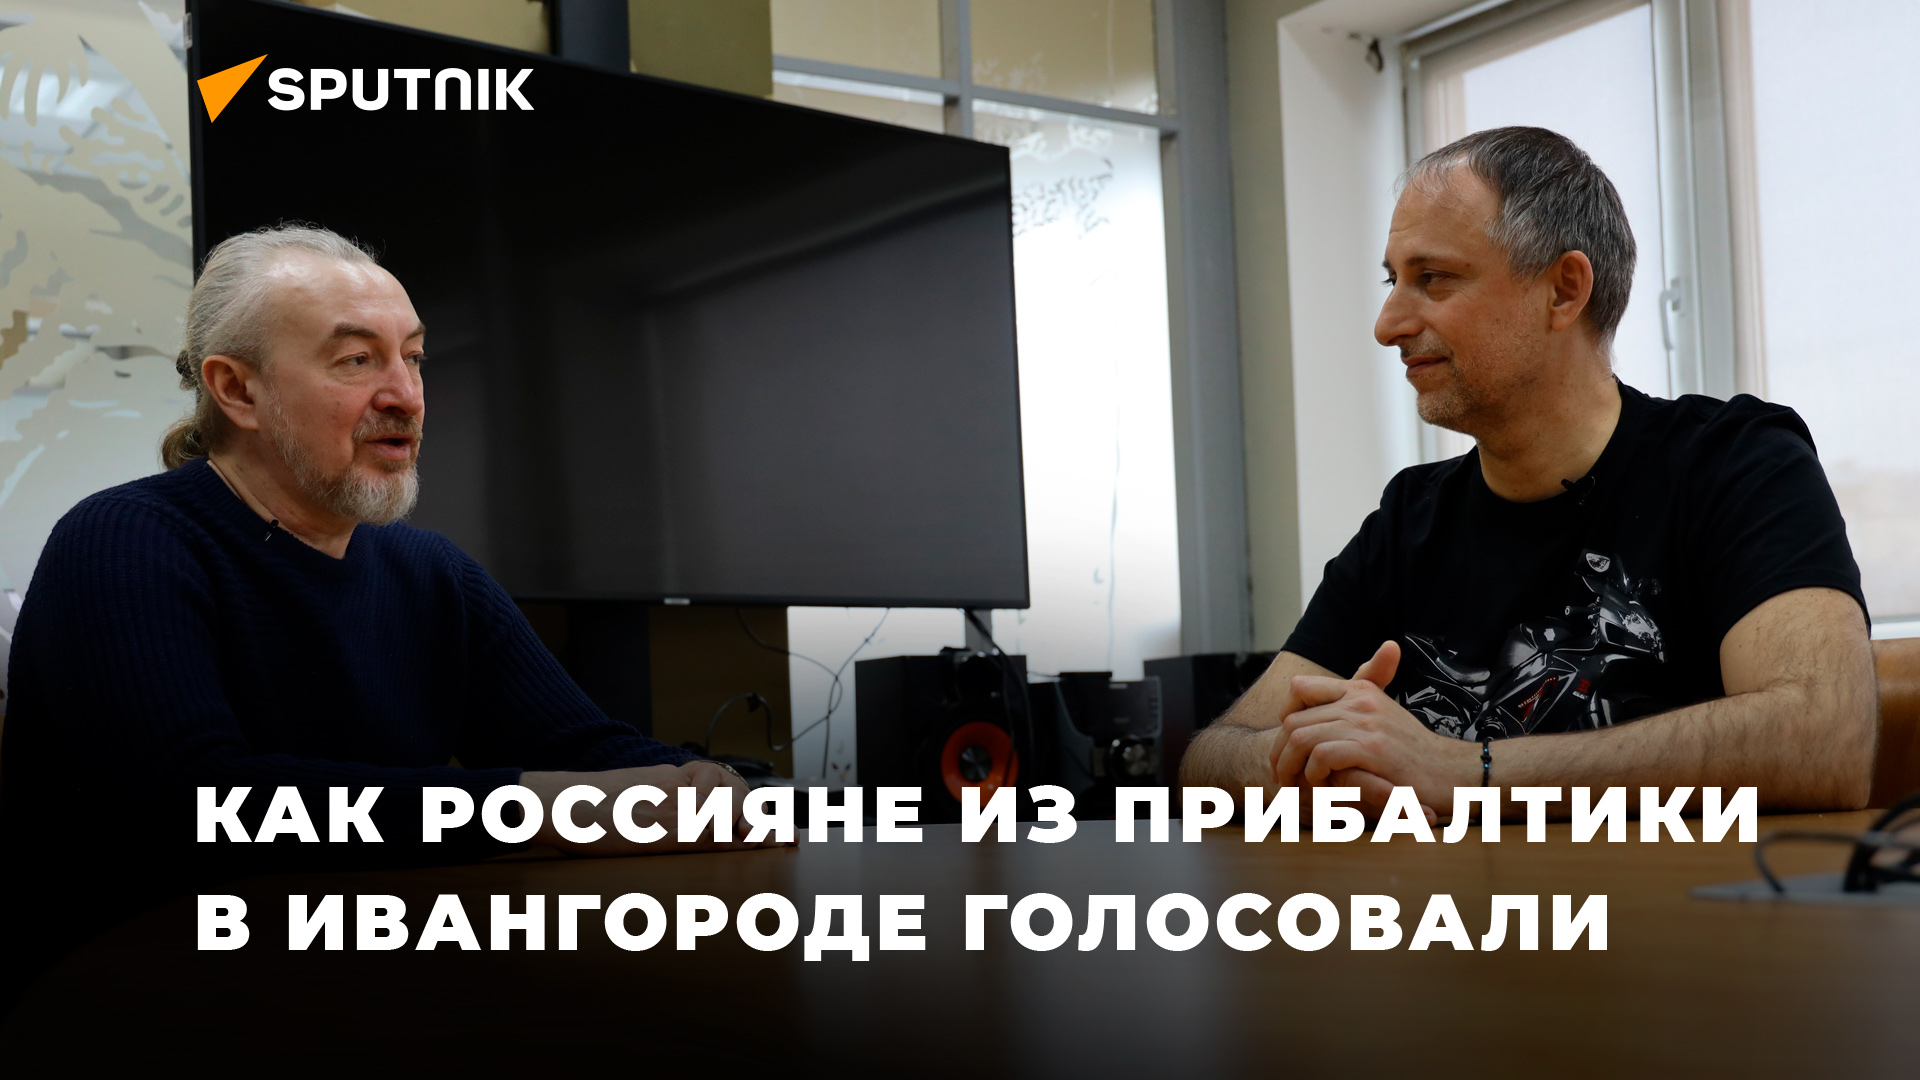 Волонтёр Алексей Есаков: "Мало кто знал, что имеет право проголосовать по загранпаспорту..."